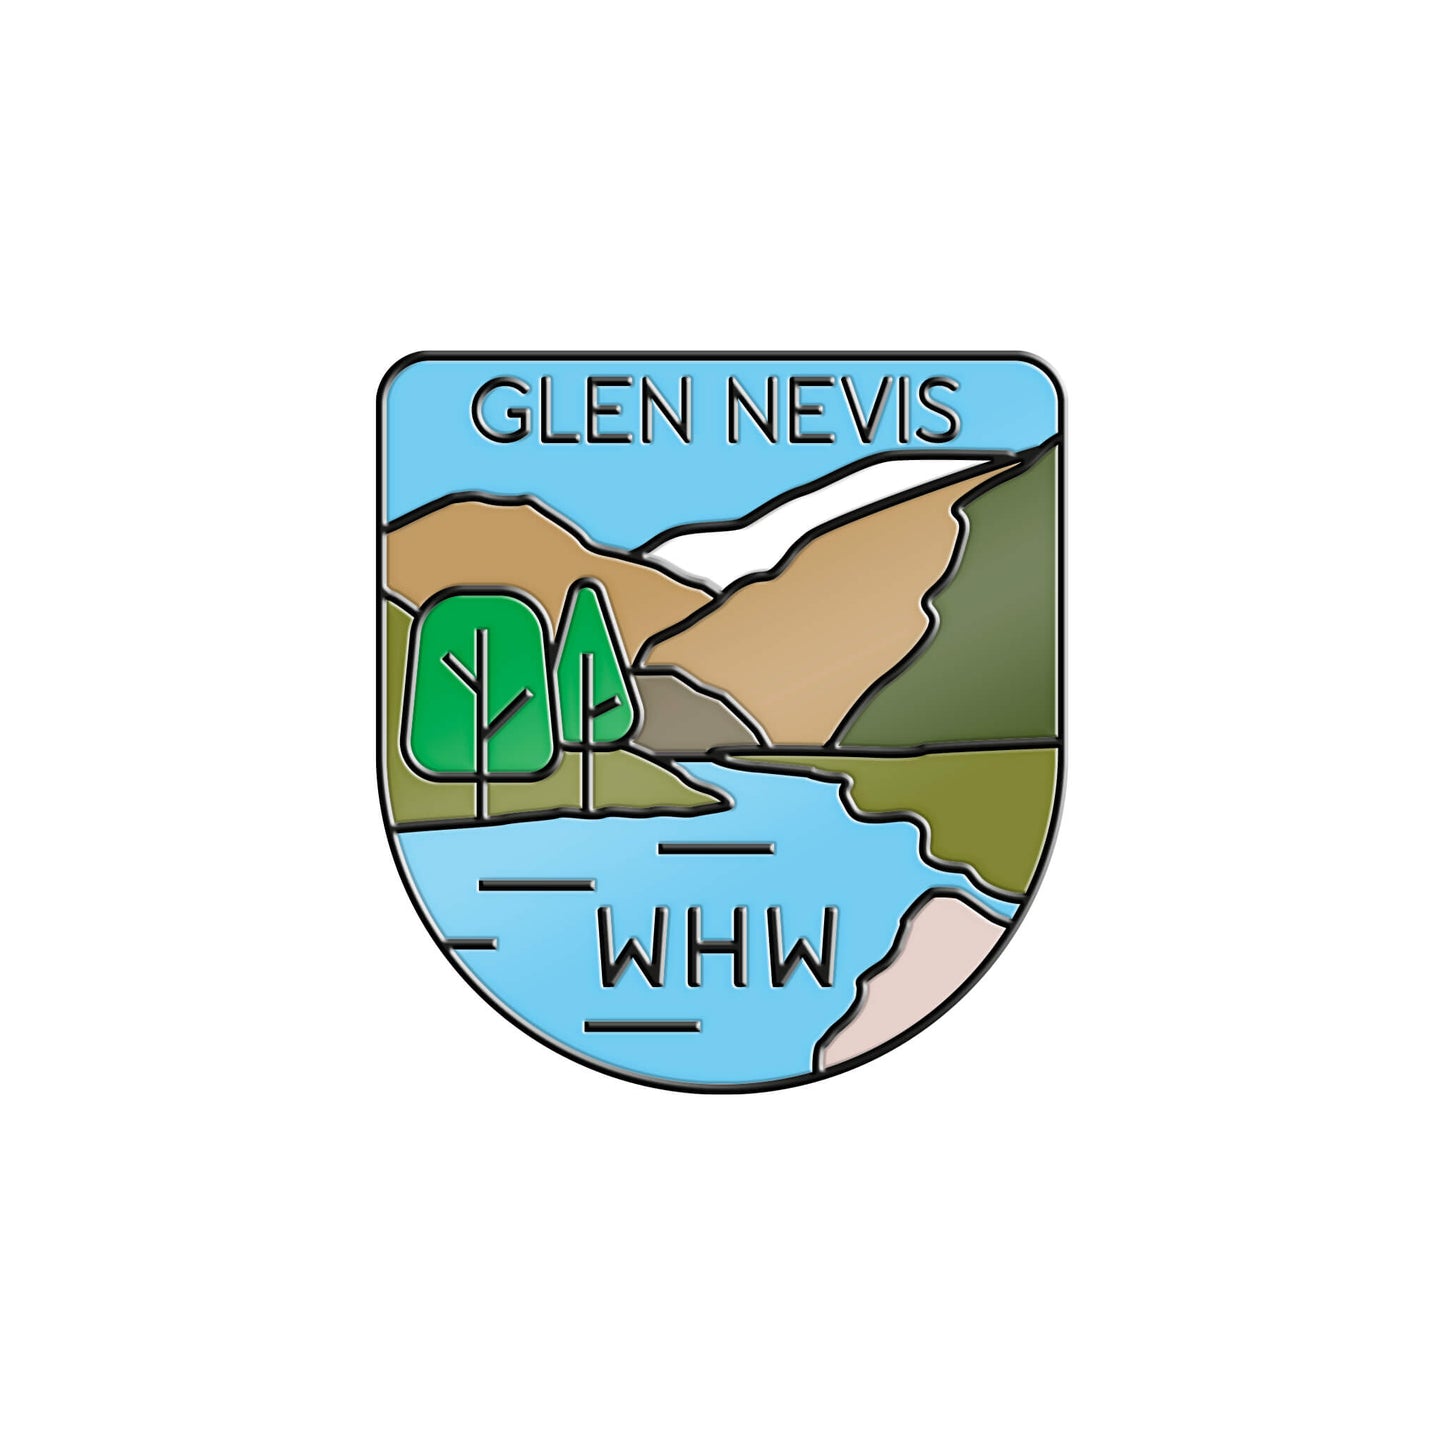 Glen Nevis Pin Badge - West Highland Way